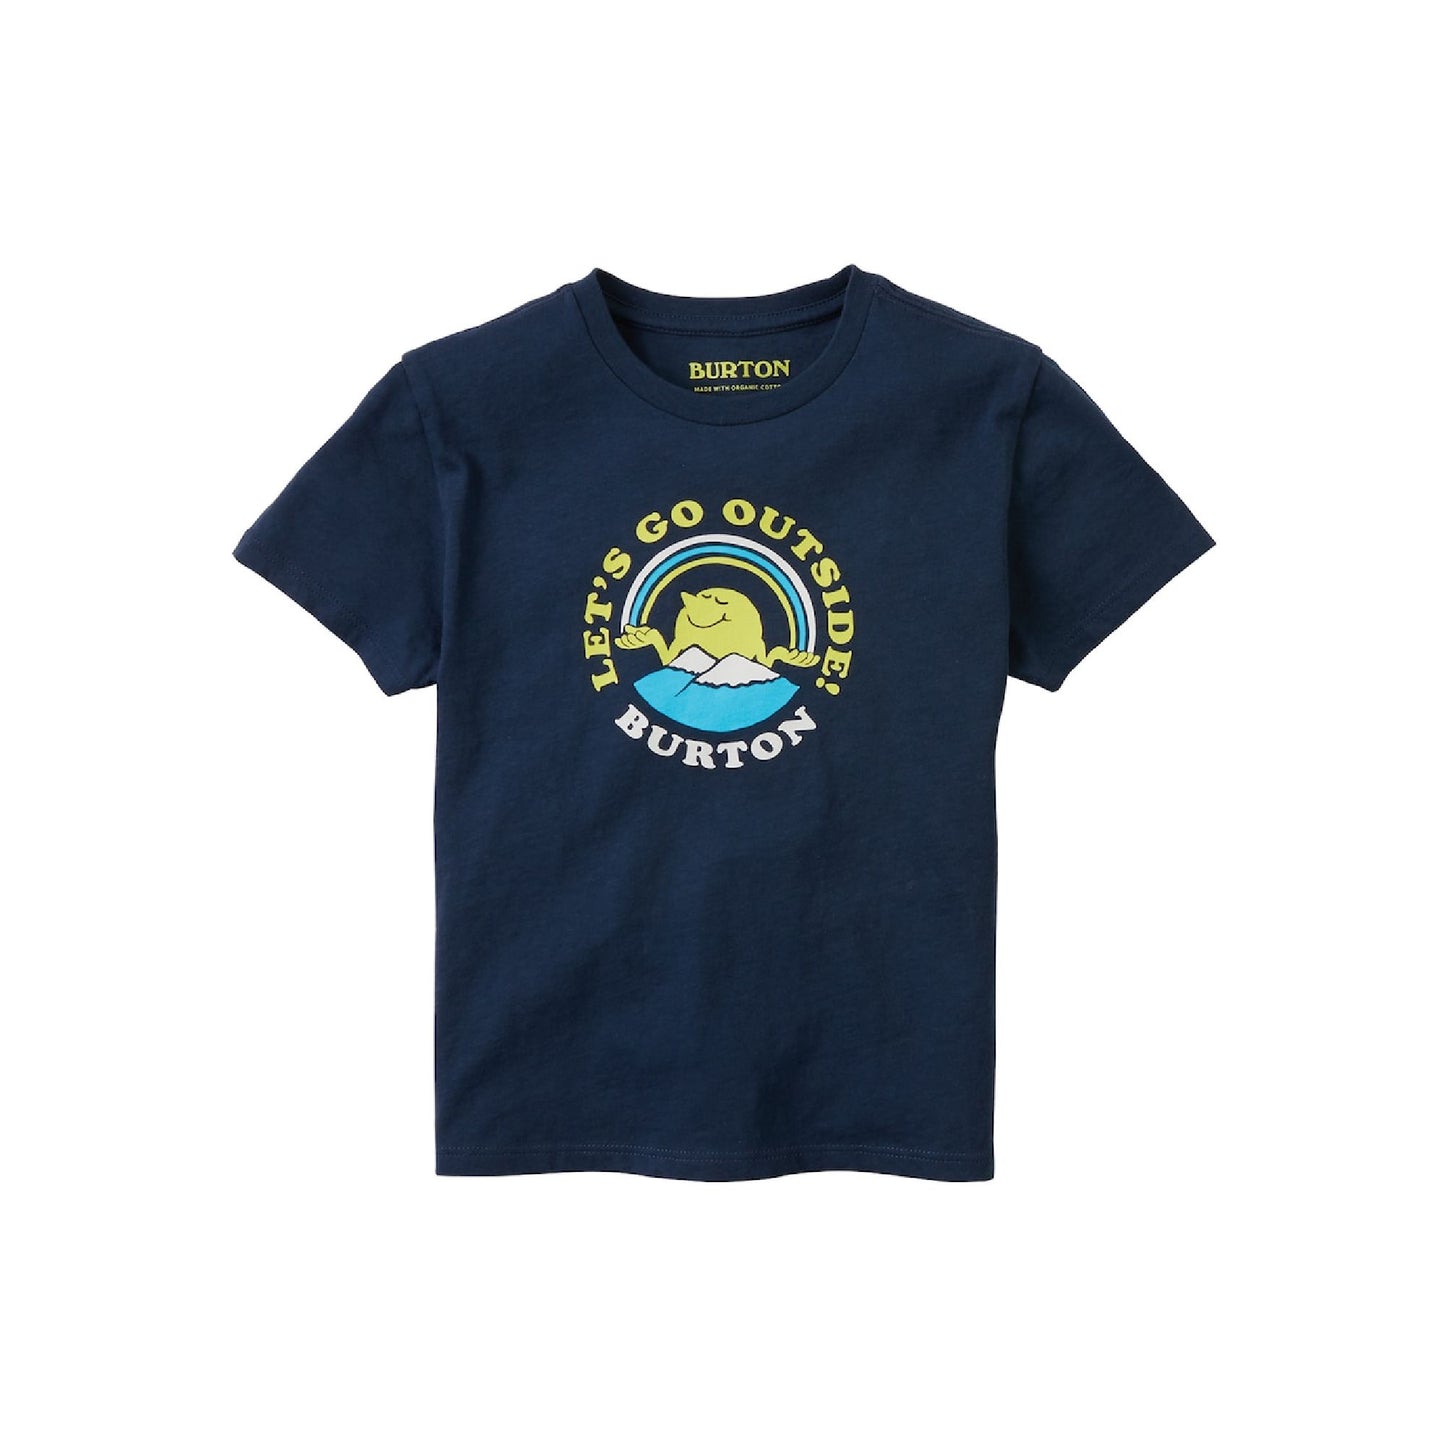 Burton Toddler Short Sleeve T-Shirt Dress Blue SS Shirts